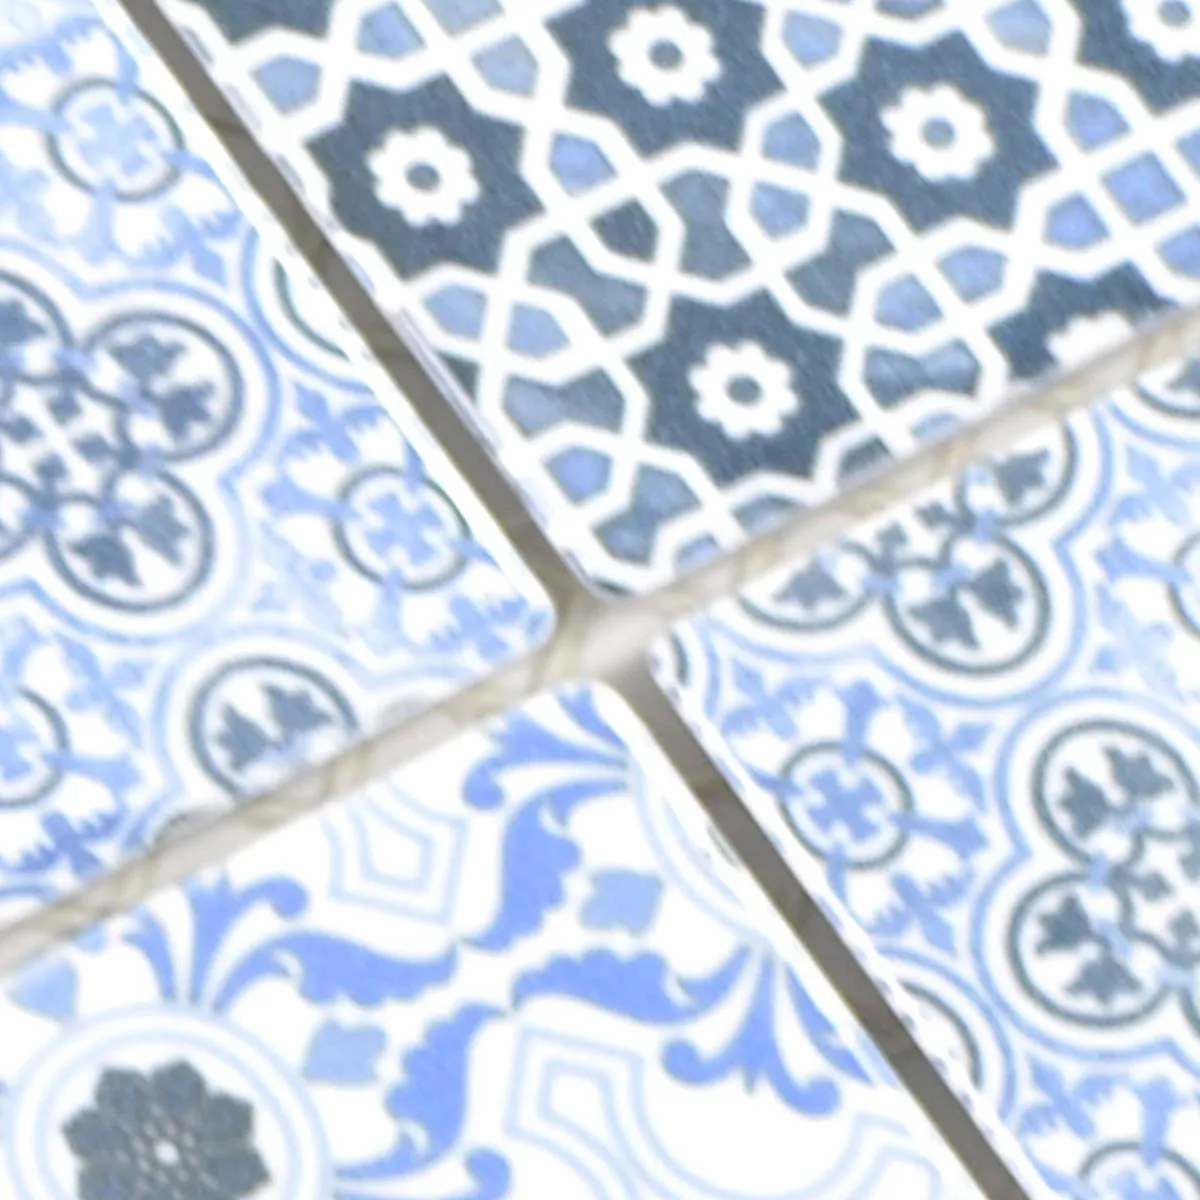 Muestra Cerámica Azulejos De Mosaico Daymion Aspecto Retro